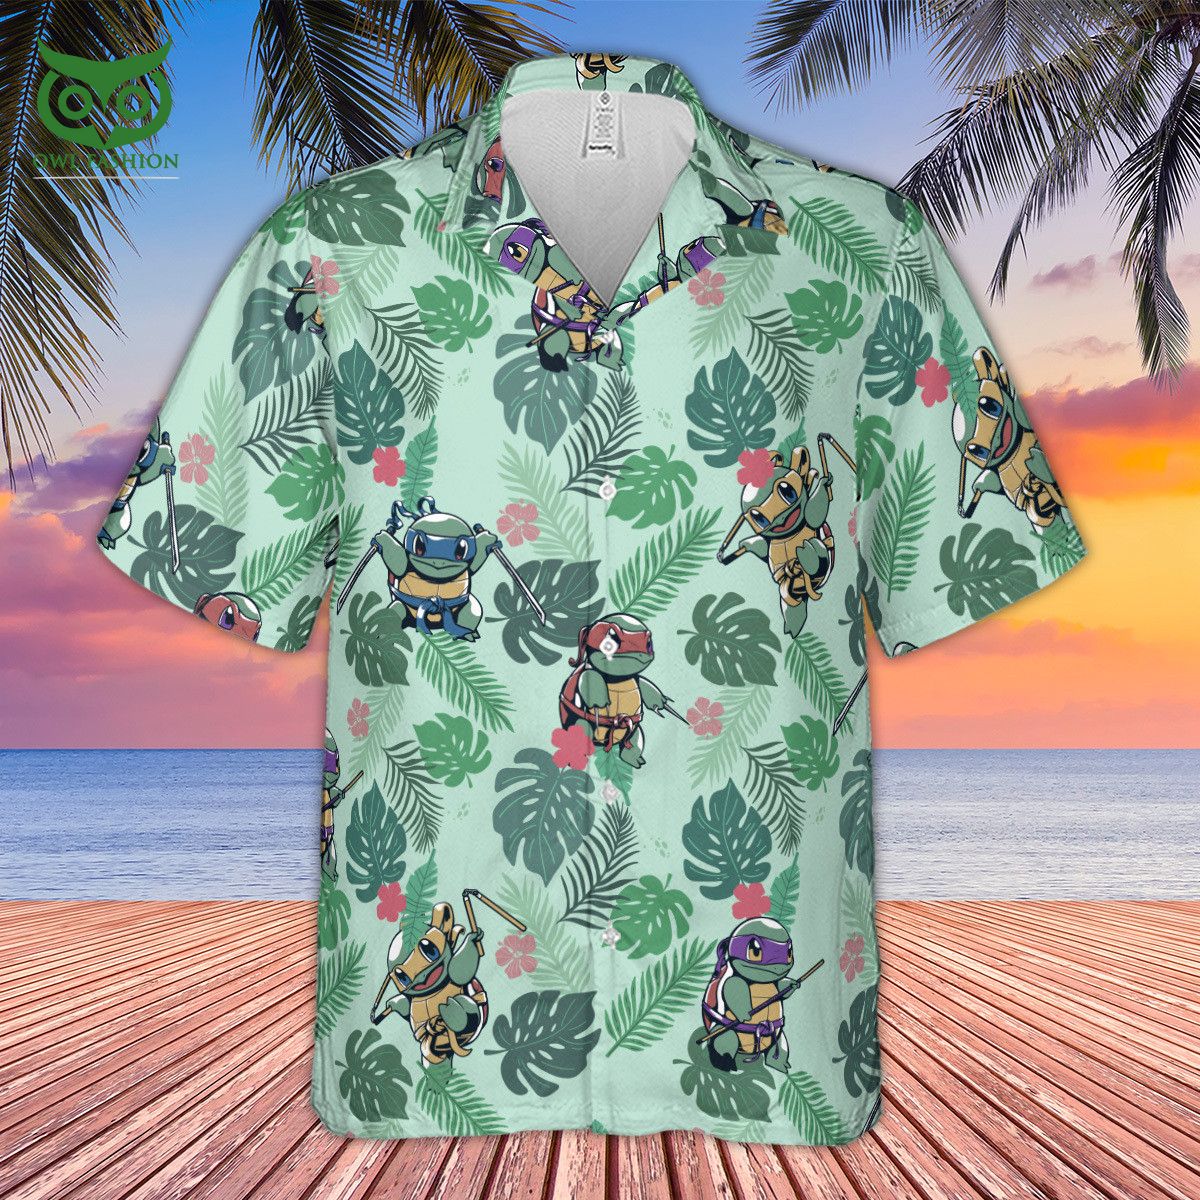 Teenage Mutant Ninja Turtles Adventures 3D hawaiian shirts for men